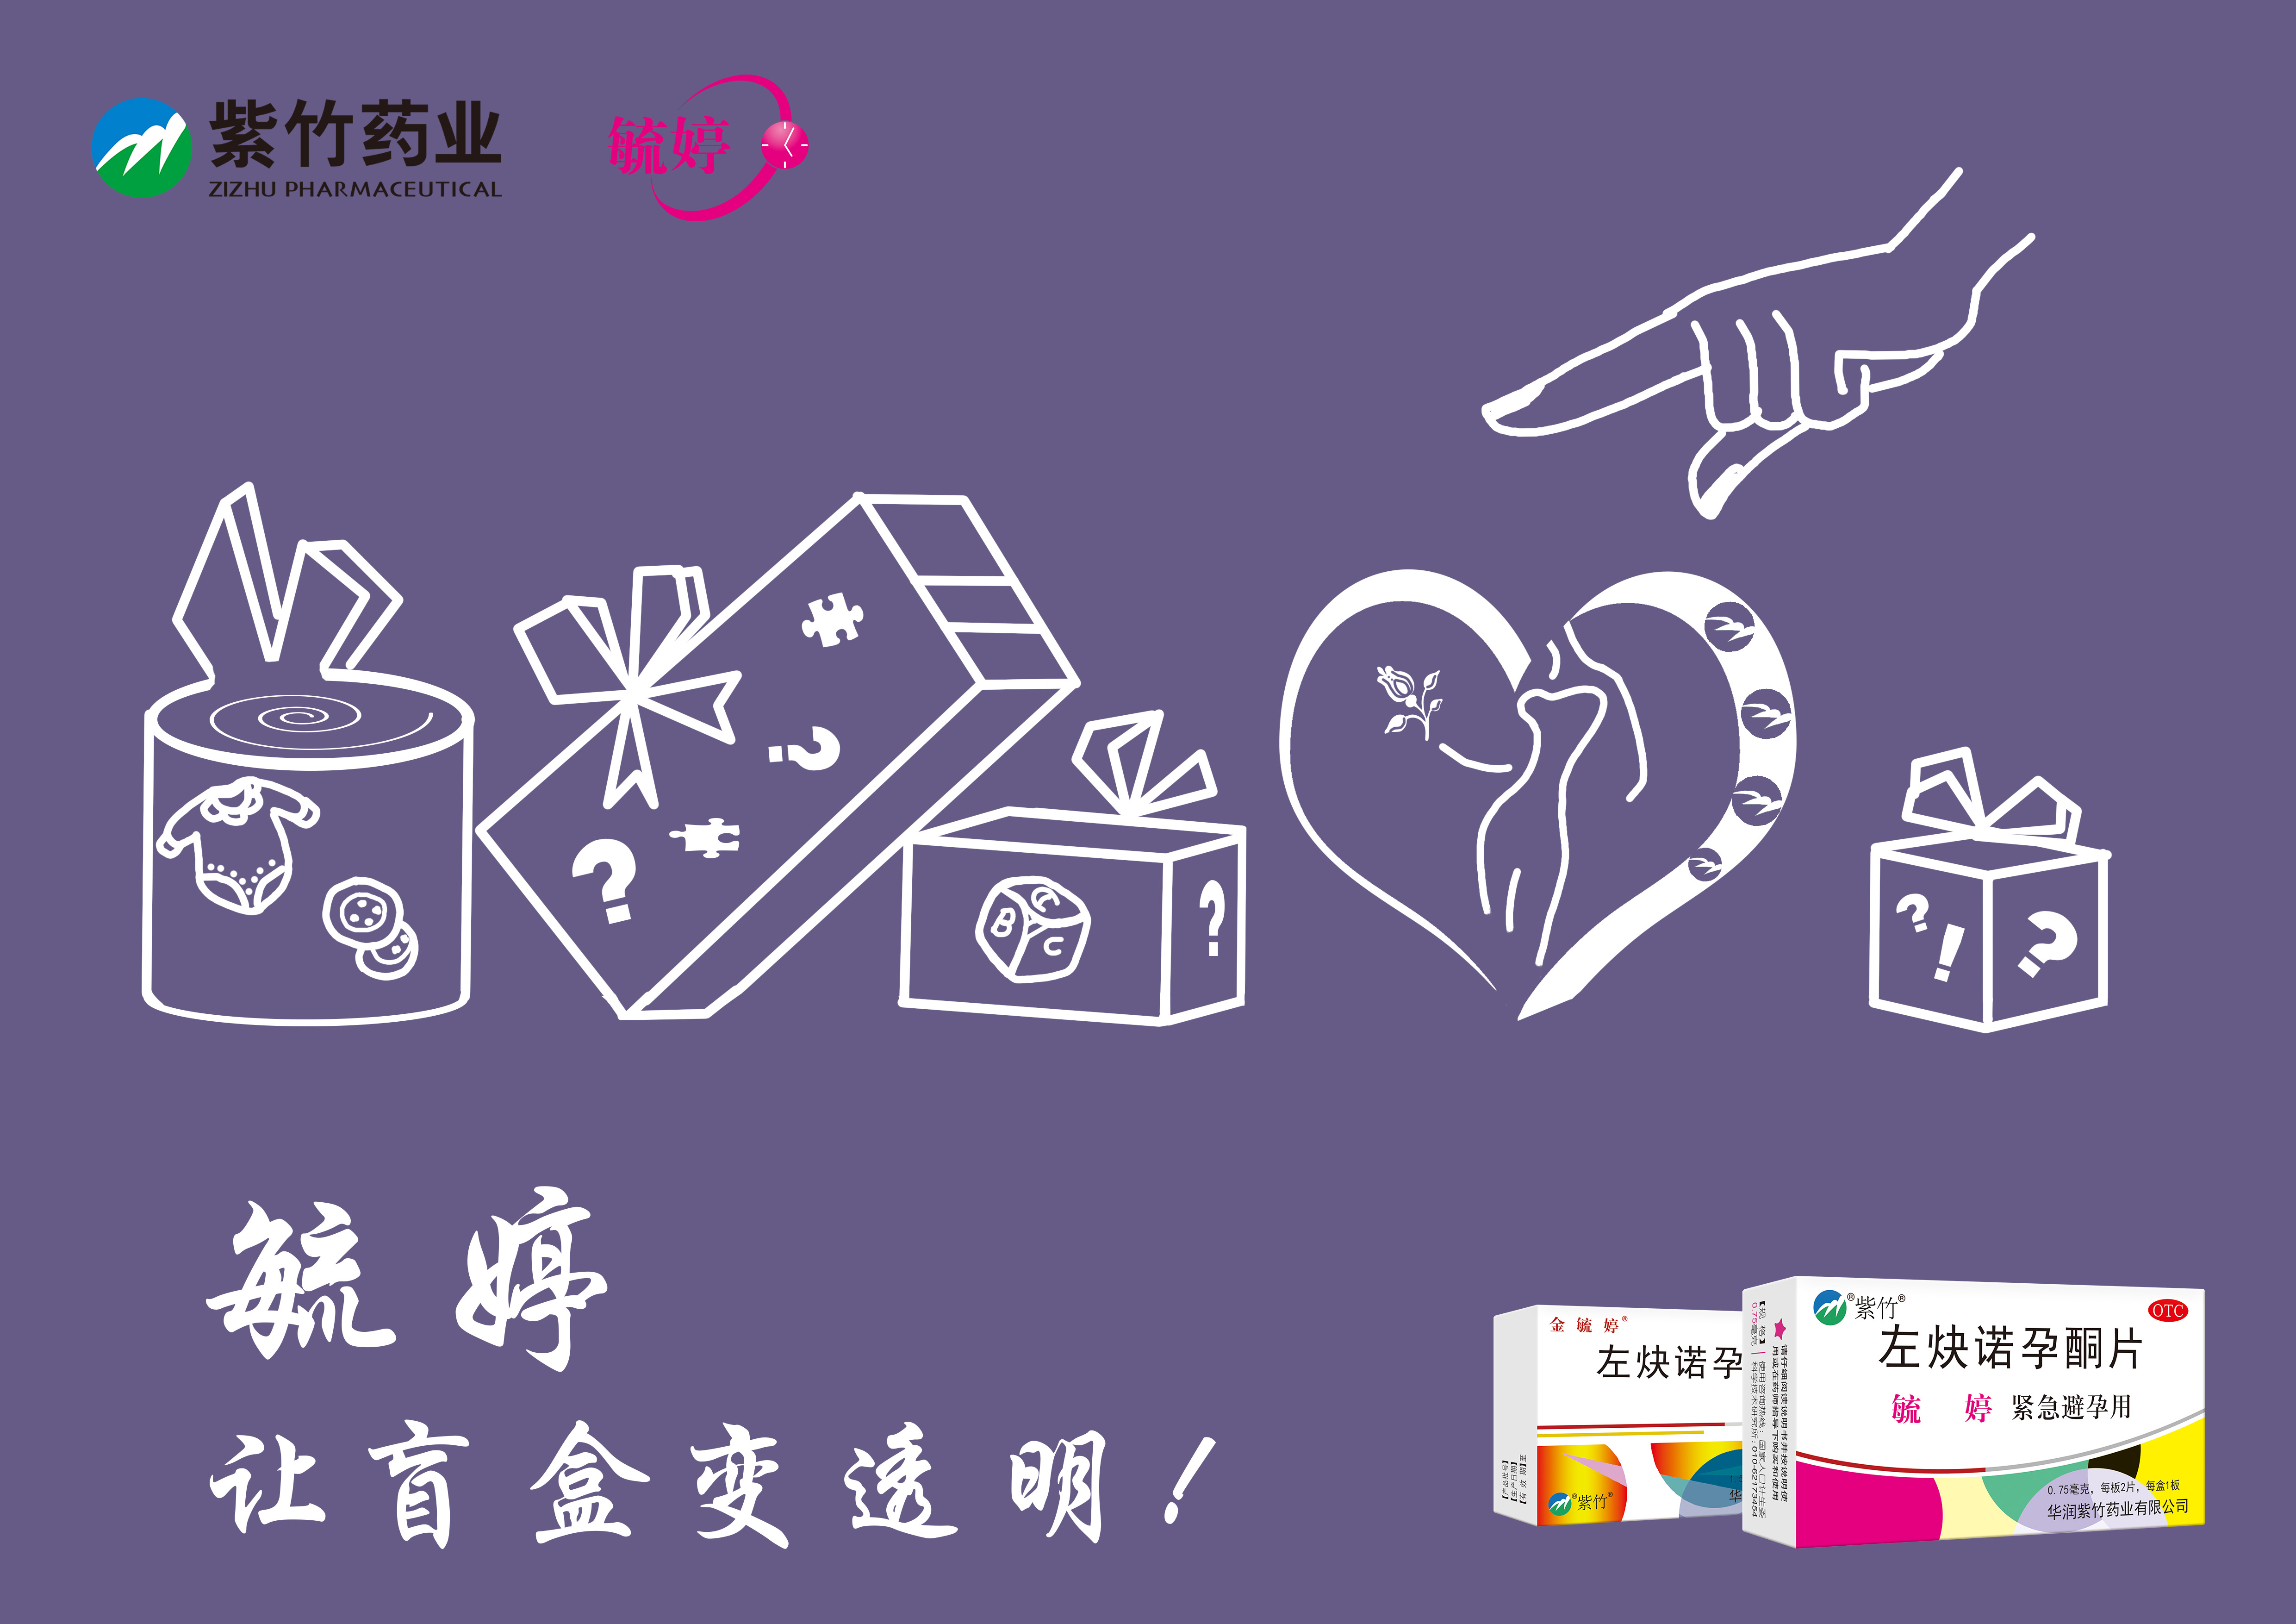 紫竹药业毓婷logo图片